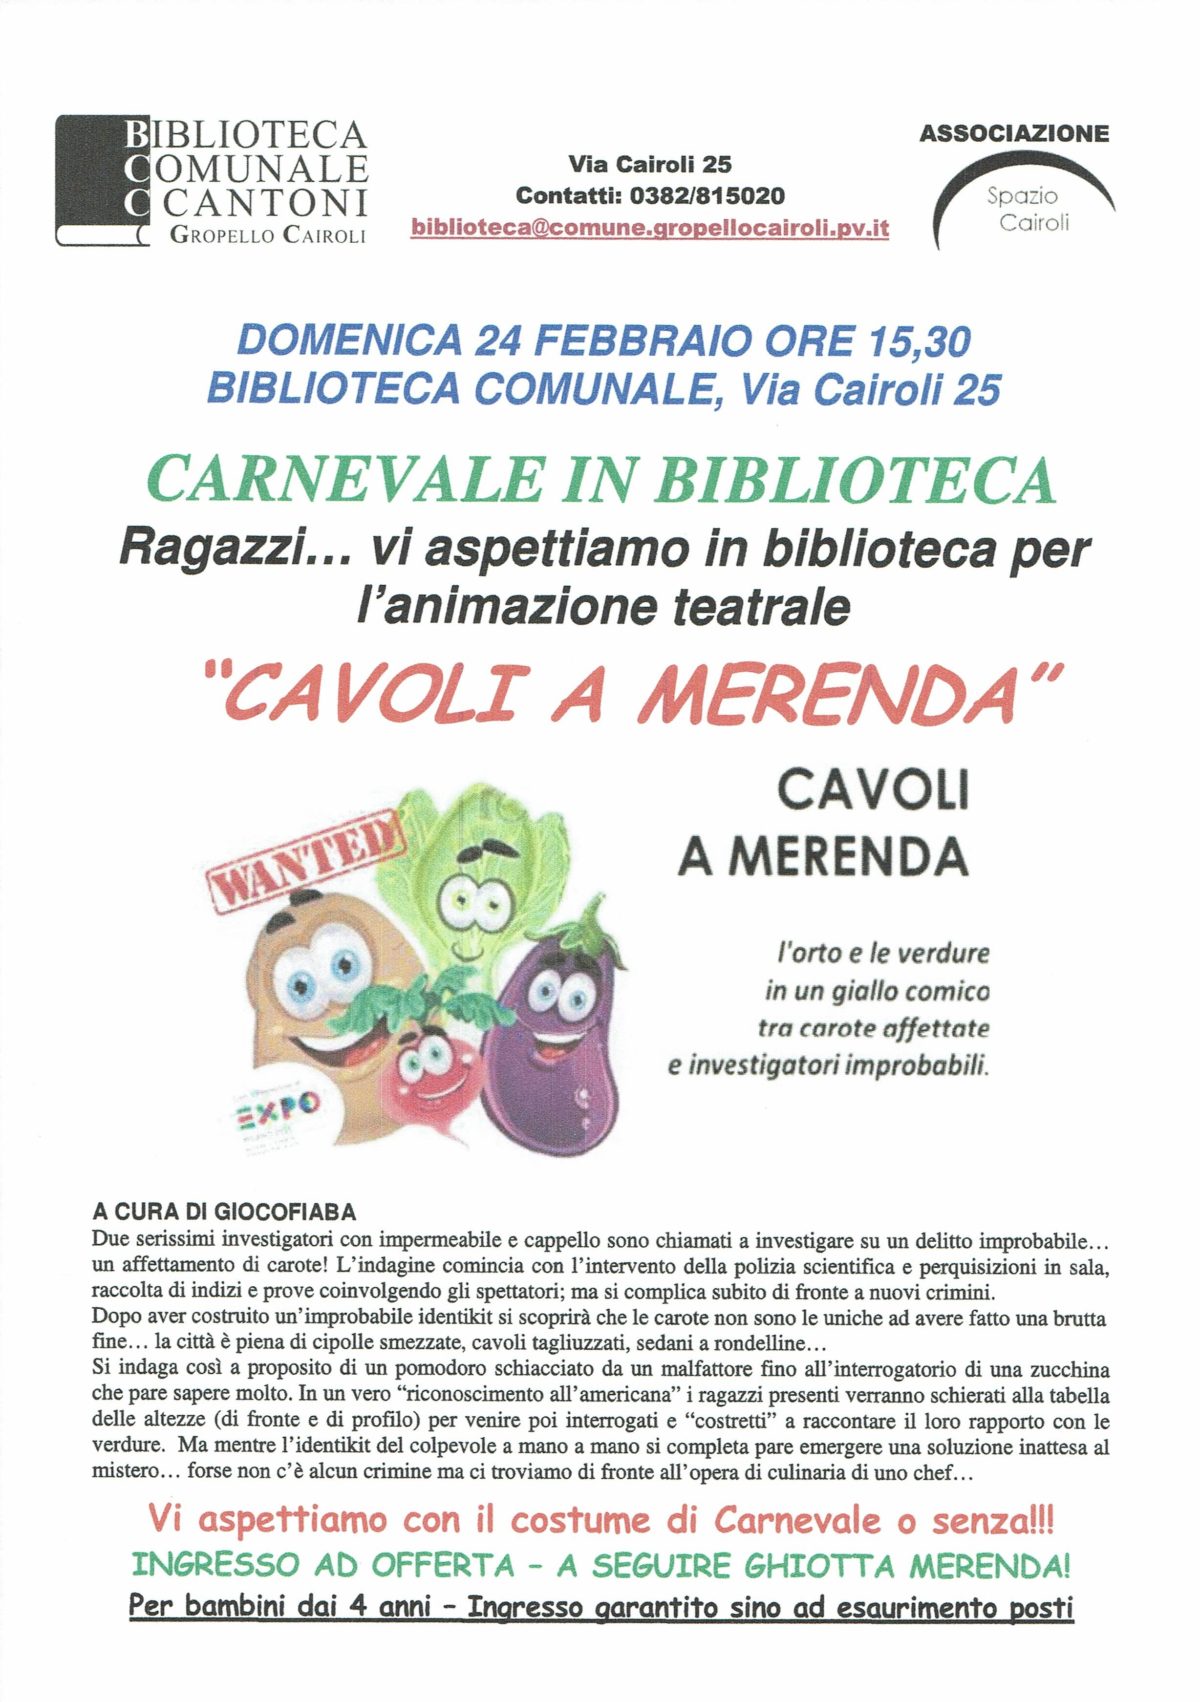 Biblioteca di Gropello C.: Carnevale in biblioteca – domenica 24 febbraio ore 15,30 animazione teatrale “Cavoli a merenda” e merenda!